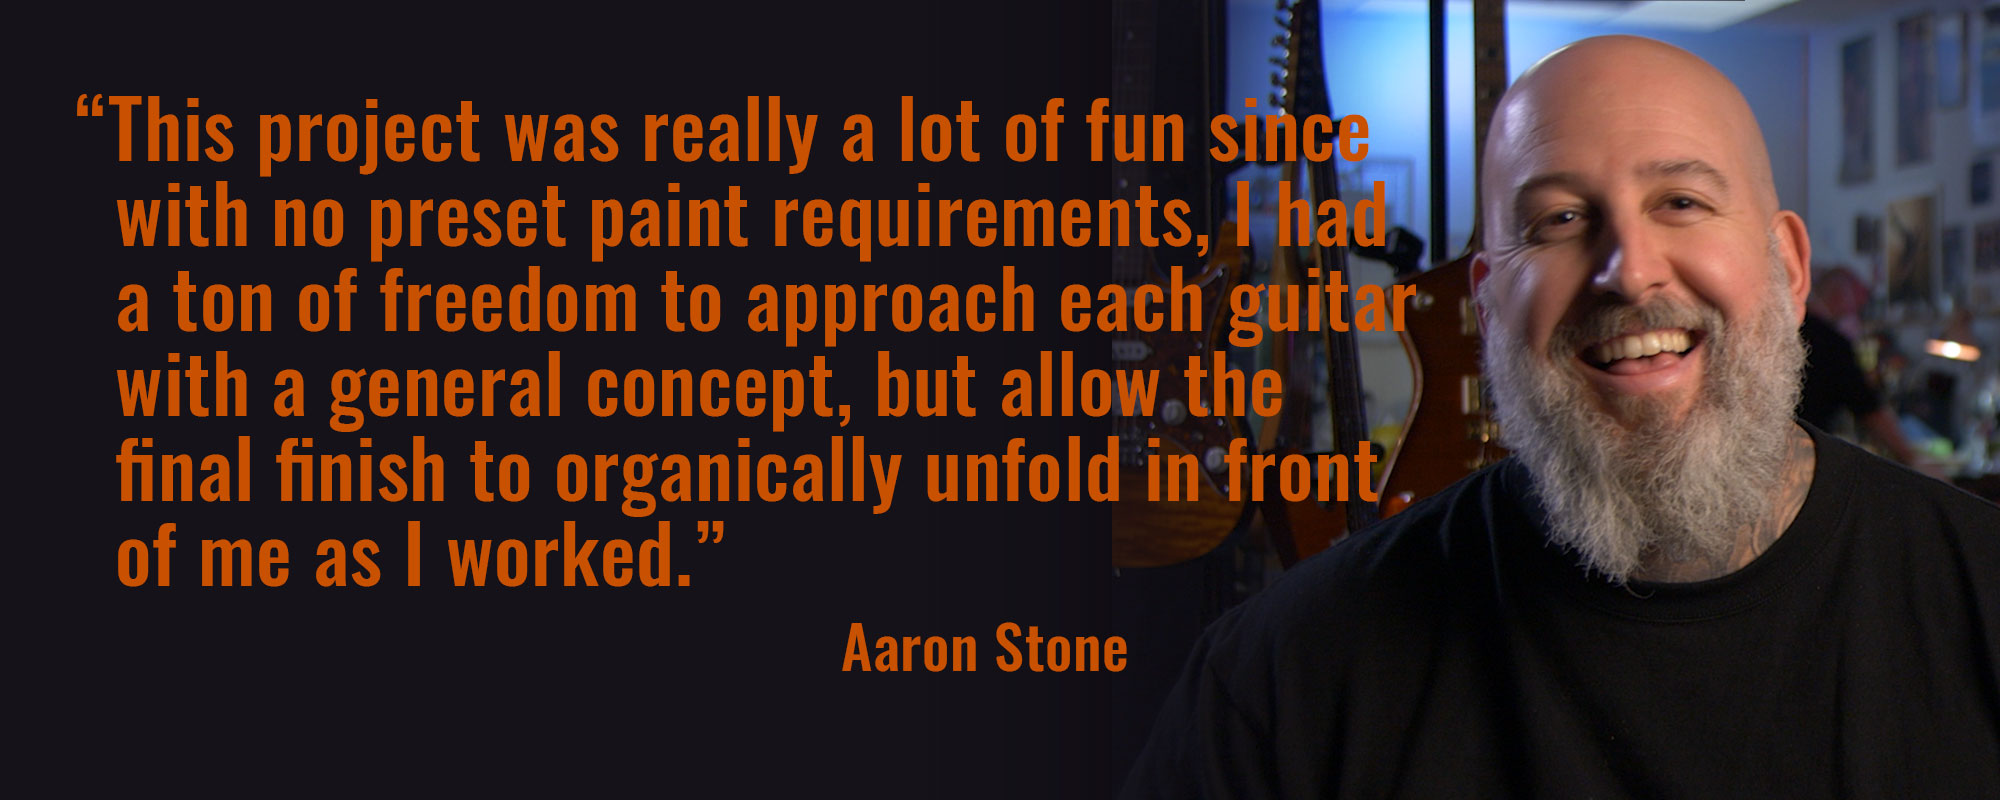 Aaron Stone